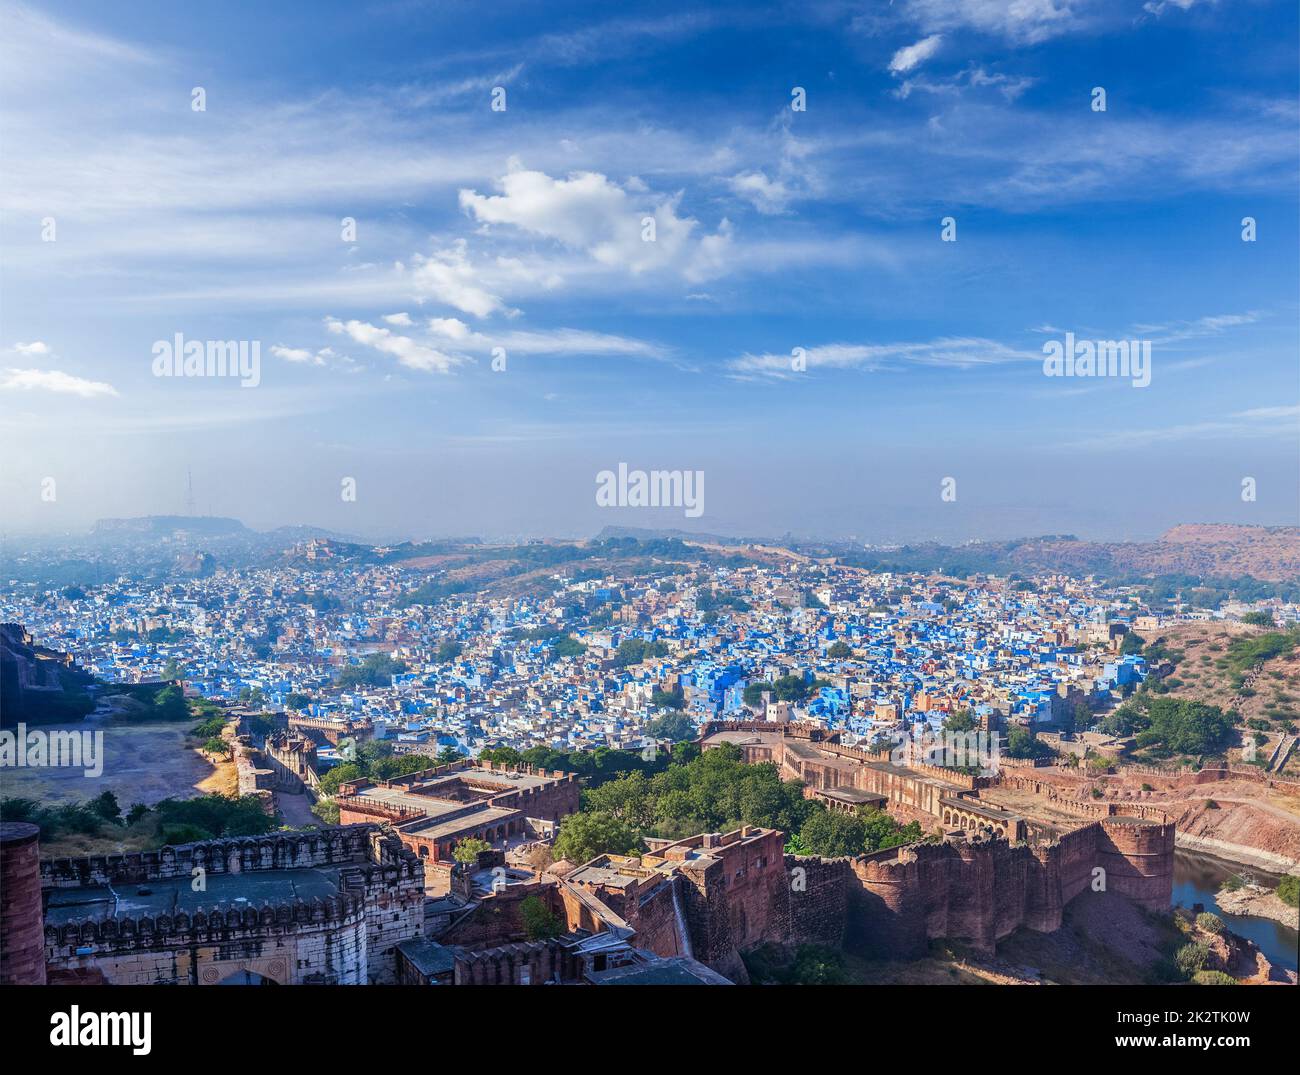 Panorama aérien de Jodhpur - la ville bleue, Inde Banque D'Images